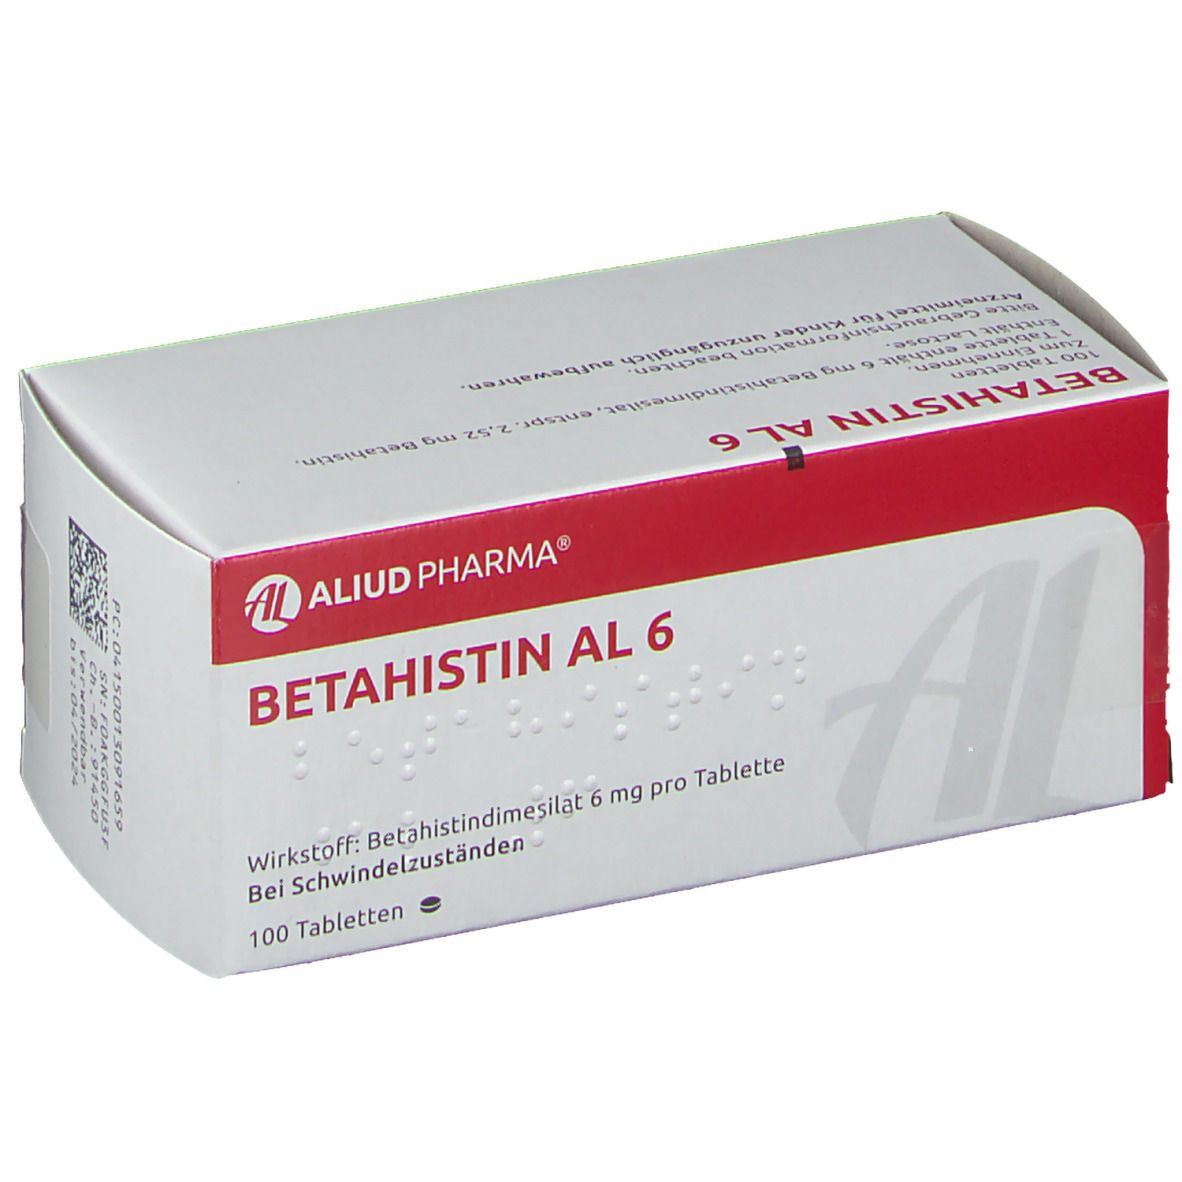 Betahistin AL 6